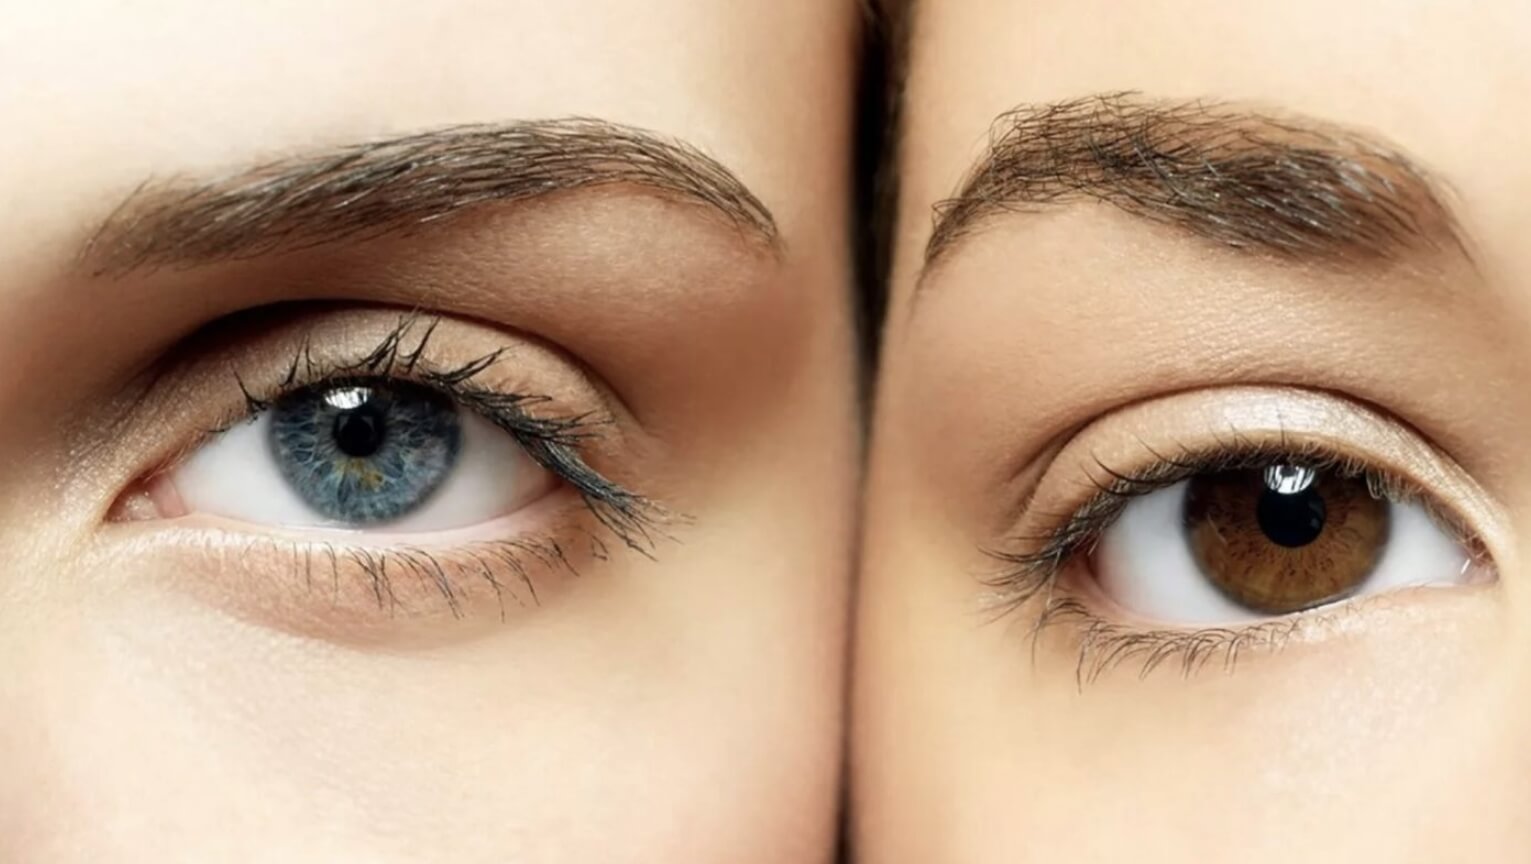 Найдена удивительная особенность голубоглазых людей — они видят лучше, чем остальные. Люди с голубыми глазами могут видеть лучше остальных, но больше рискуют здоровьем. Фото.